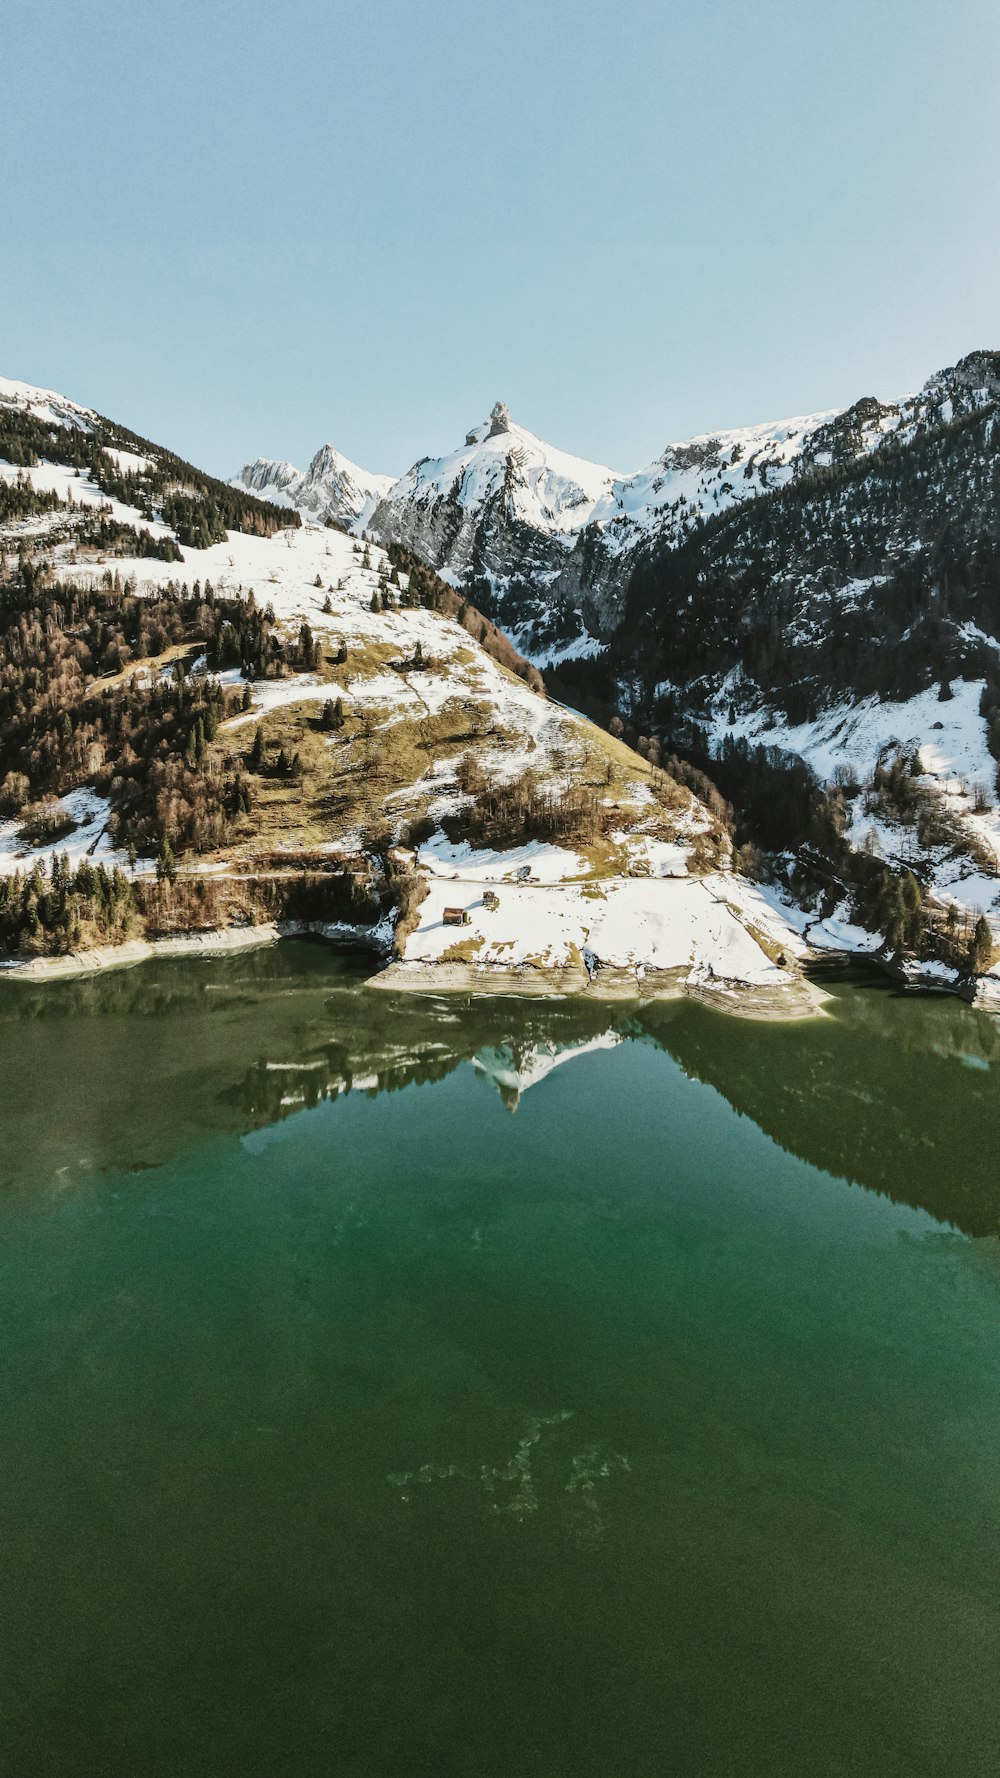 lago en medio de montañas cubiertas de nieve